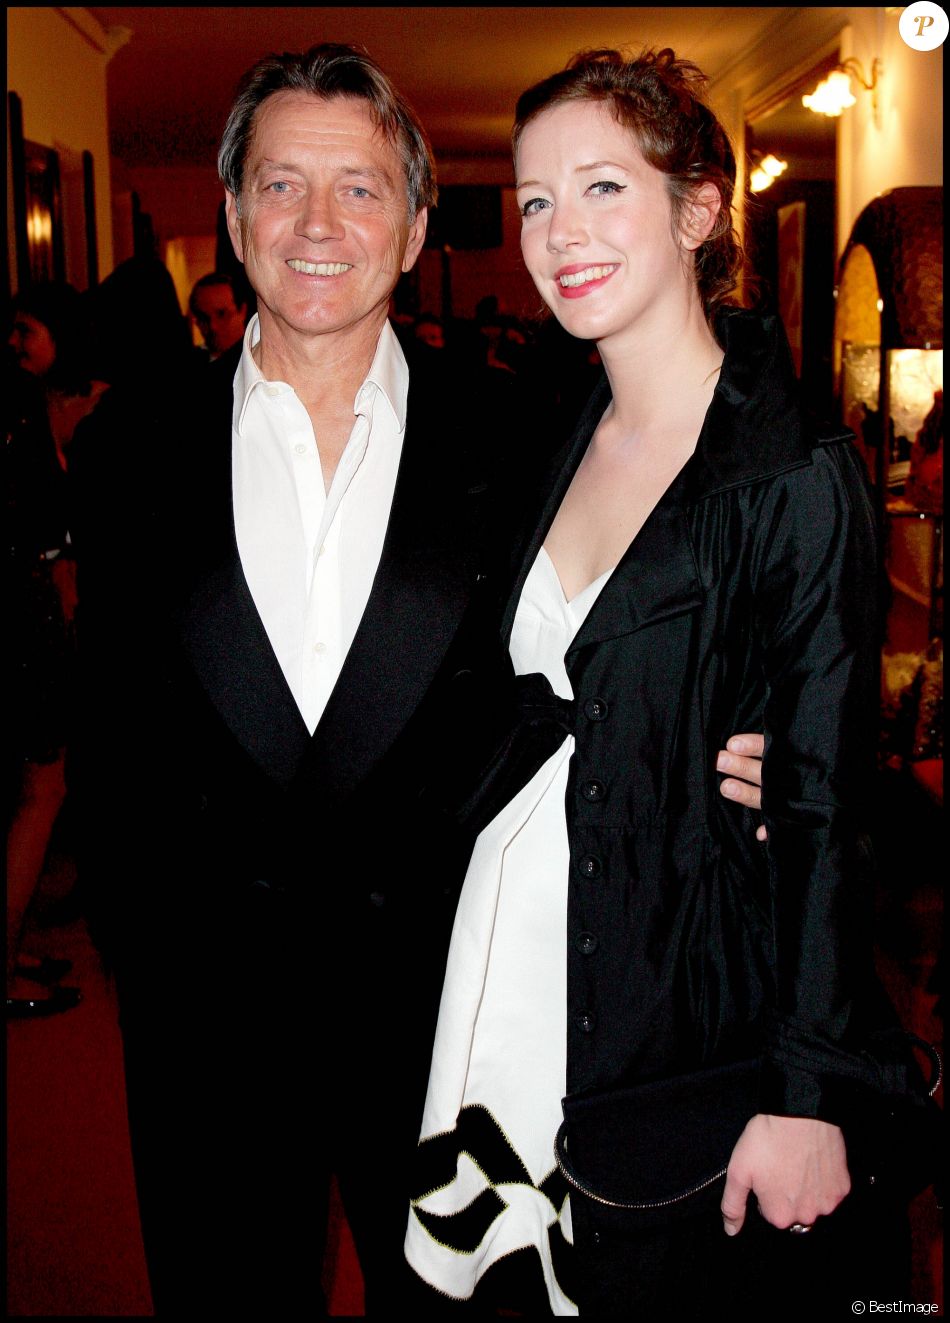  Sara Giraudeau et son père Bernard Giraudeau à la cérémonie des Molières à Paris, le 26 avril 2009.  